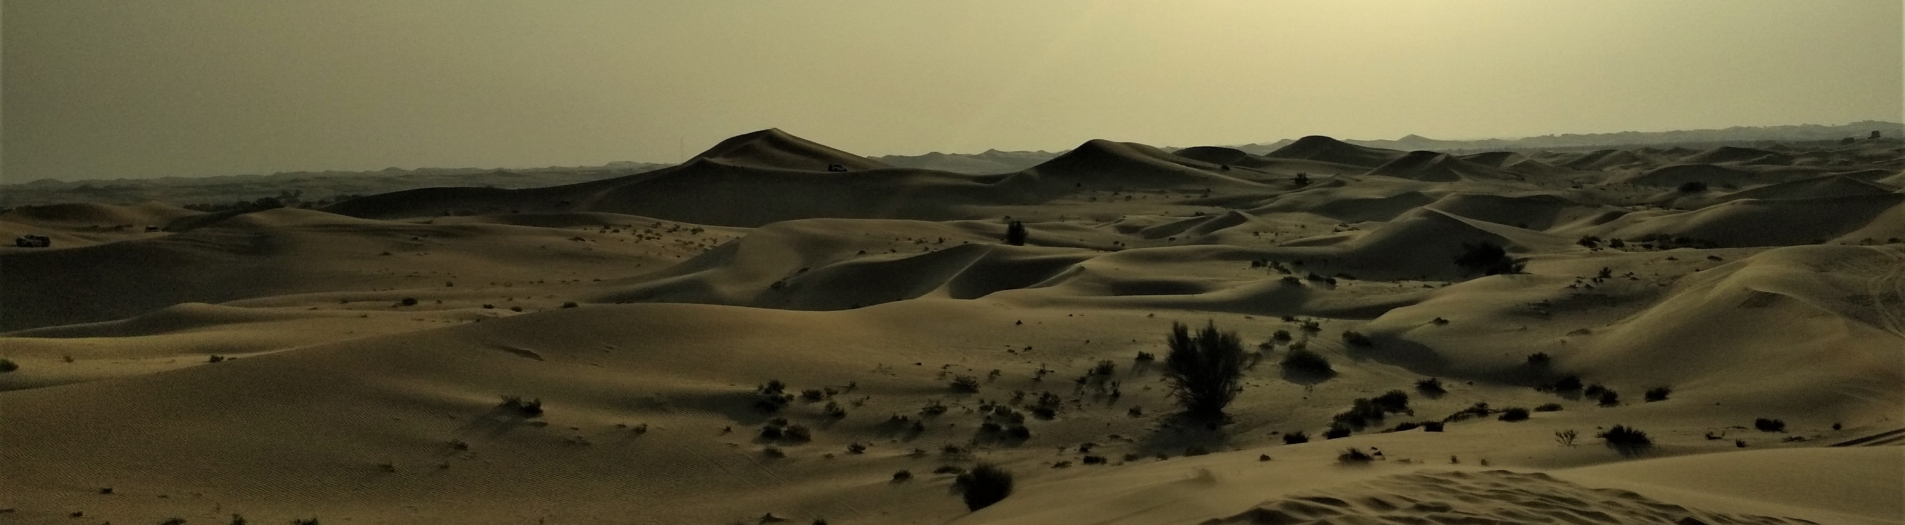 Pustynia i meczet - Abu Dhabi pozwala na chwilę się zatrzymać